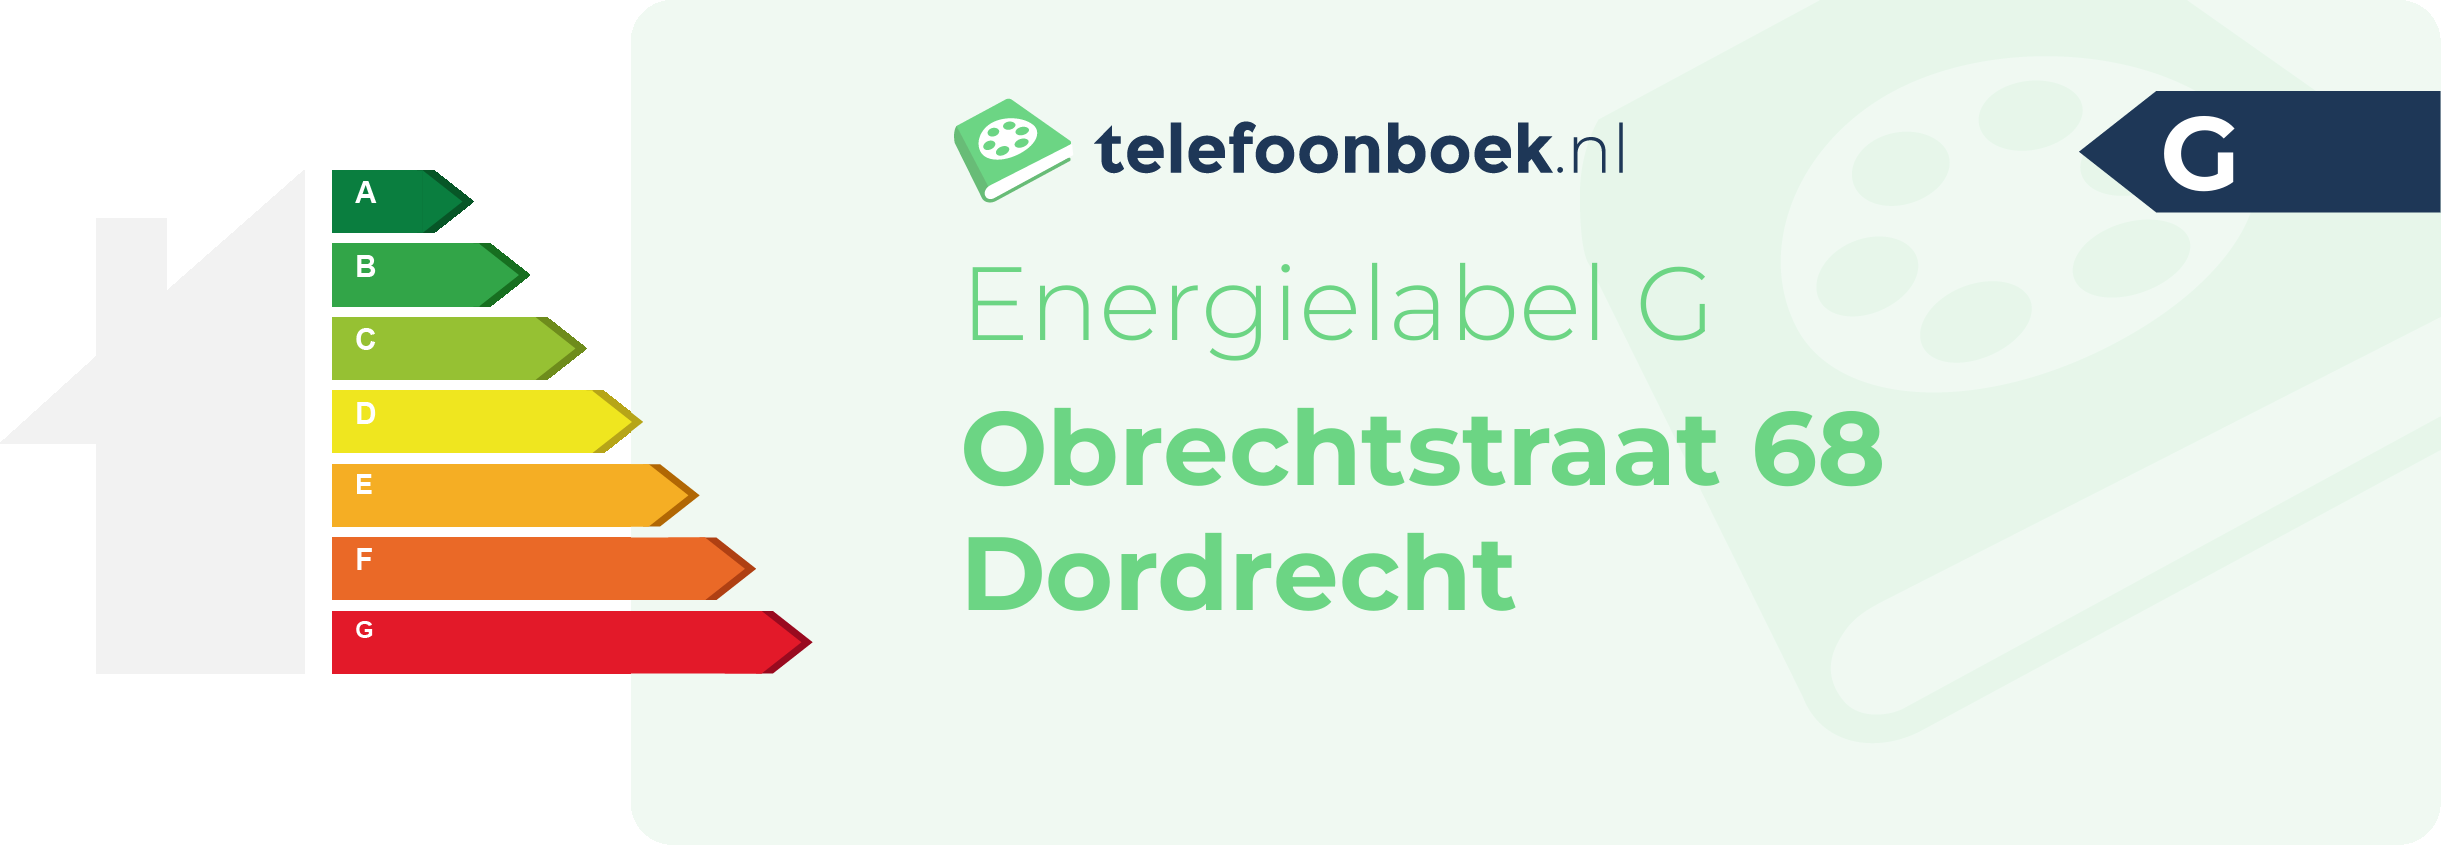 Energielabel Obrechtstraat 68 Dordrecht